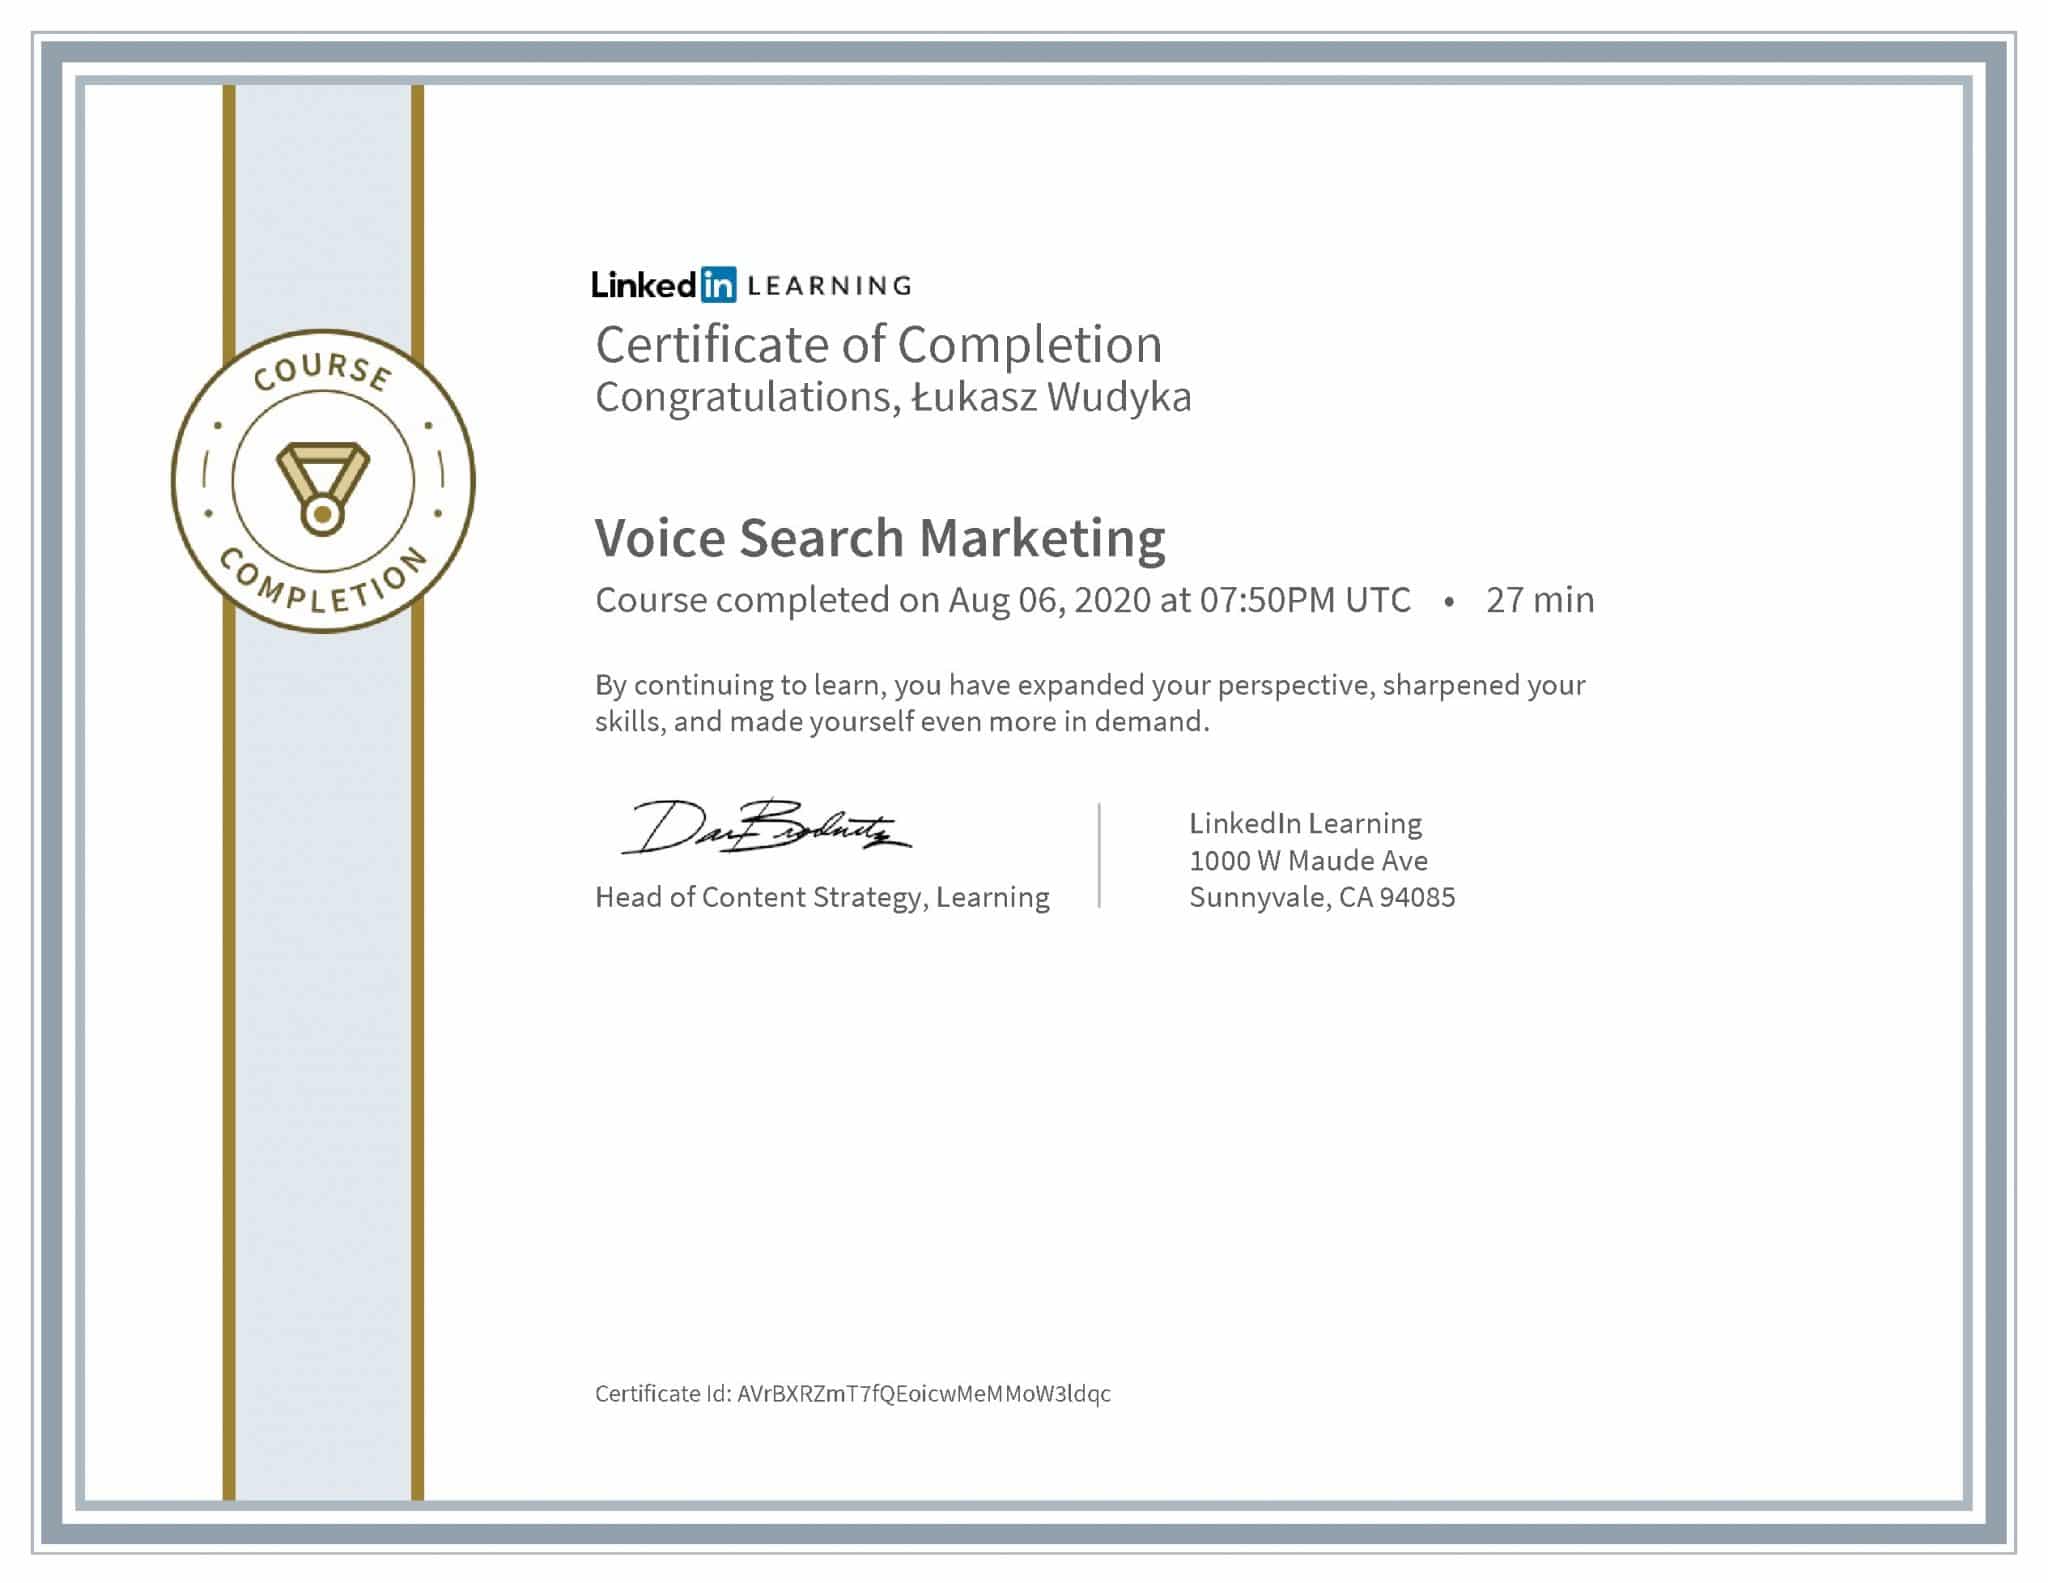 Łukasz Wudyka certyfikat LinkedIn Voice Search Marketing